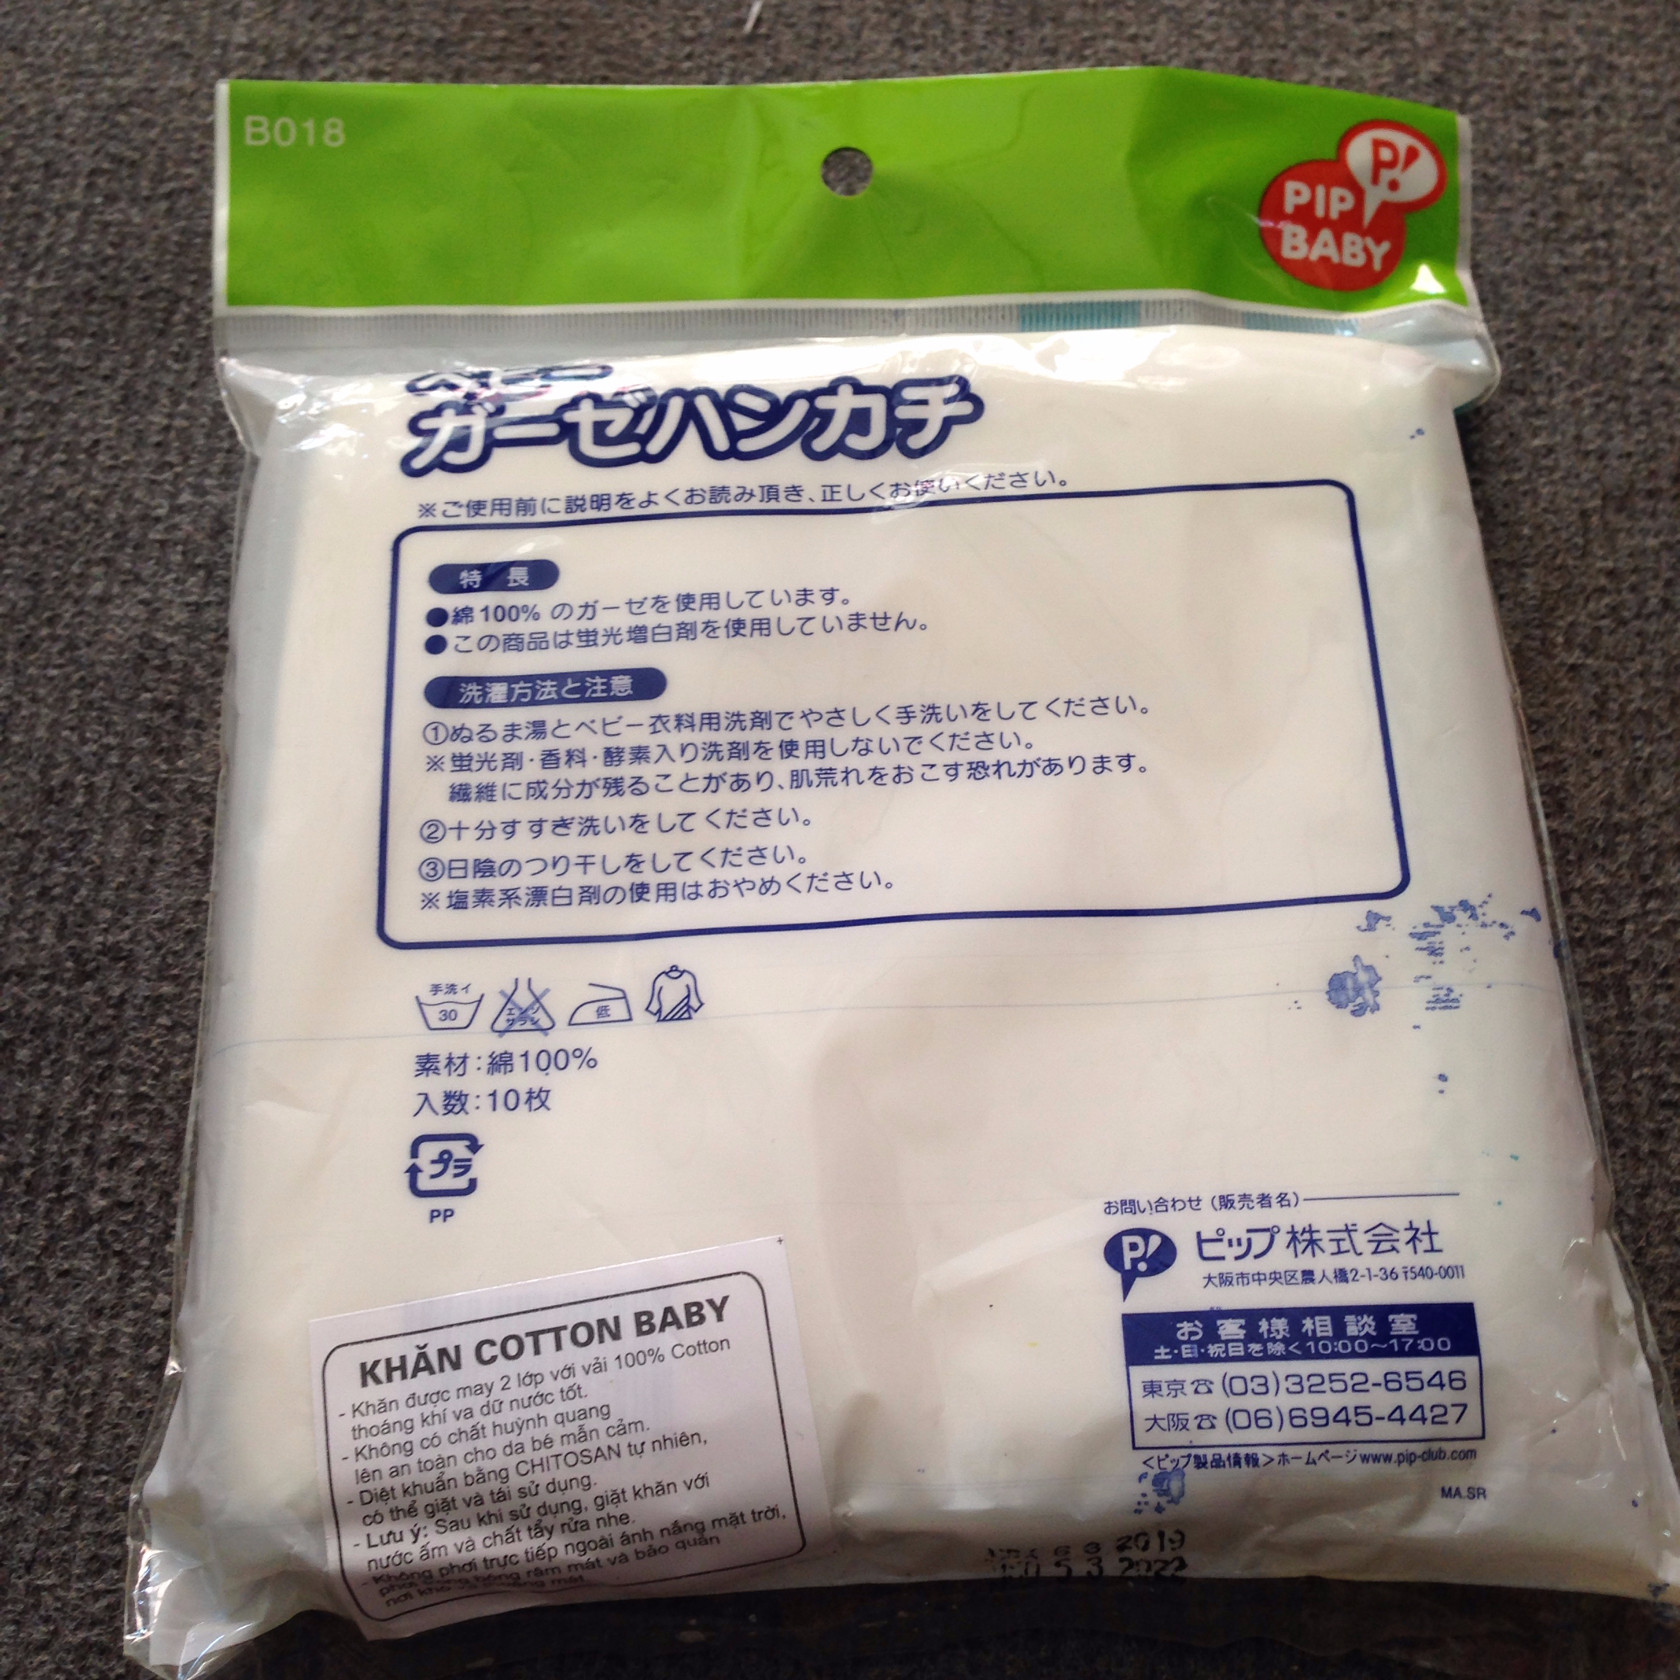 Khăn sữa trắng cotton 2 lớp mềm mại cho bé (30 x 30cm) - Gói 10 cái